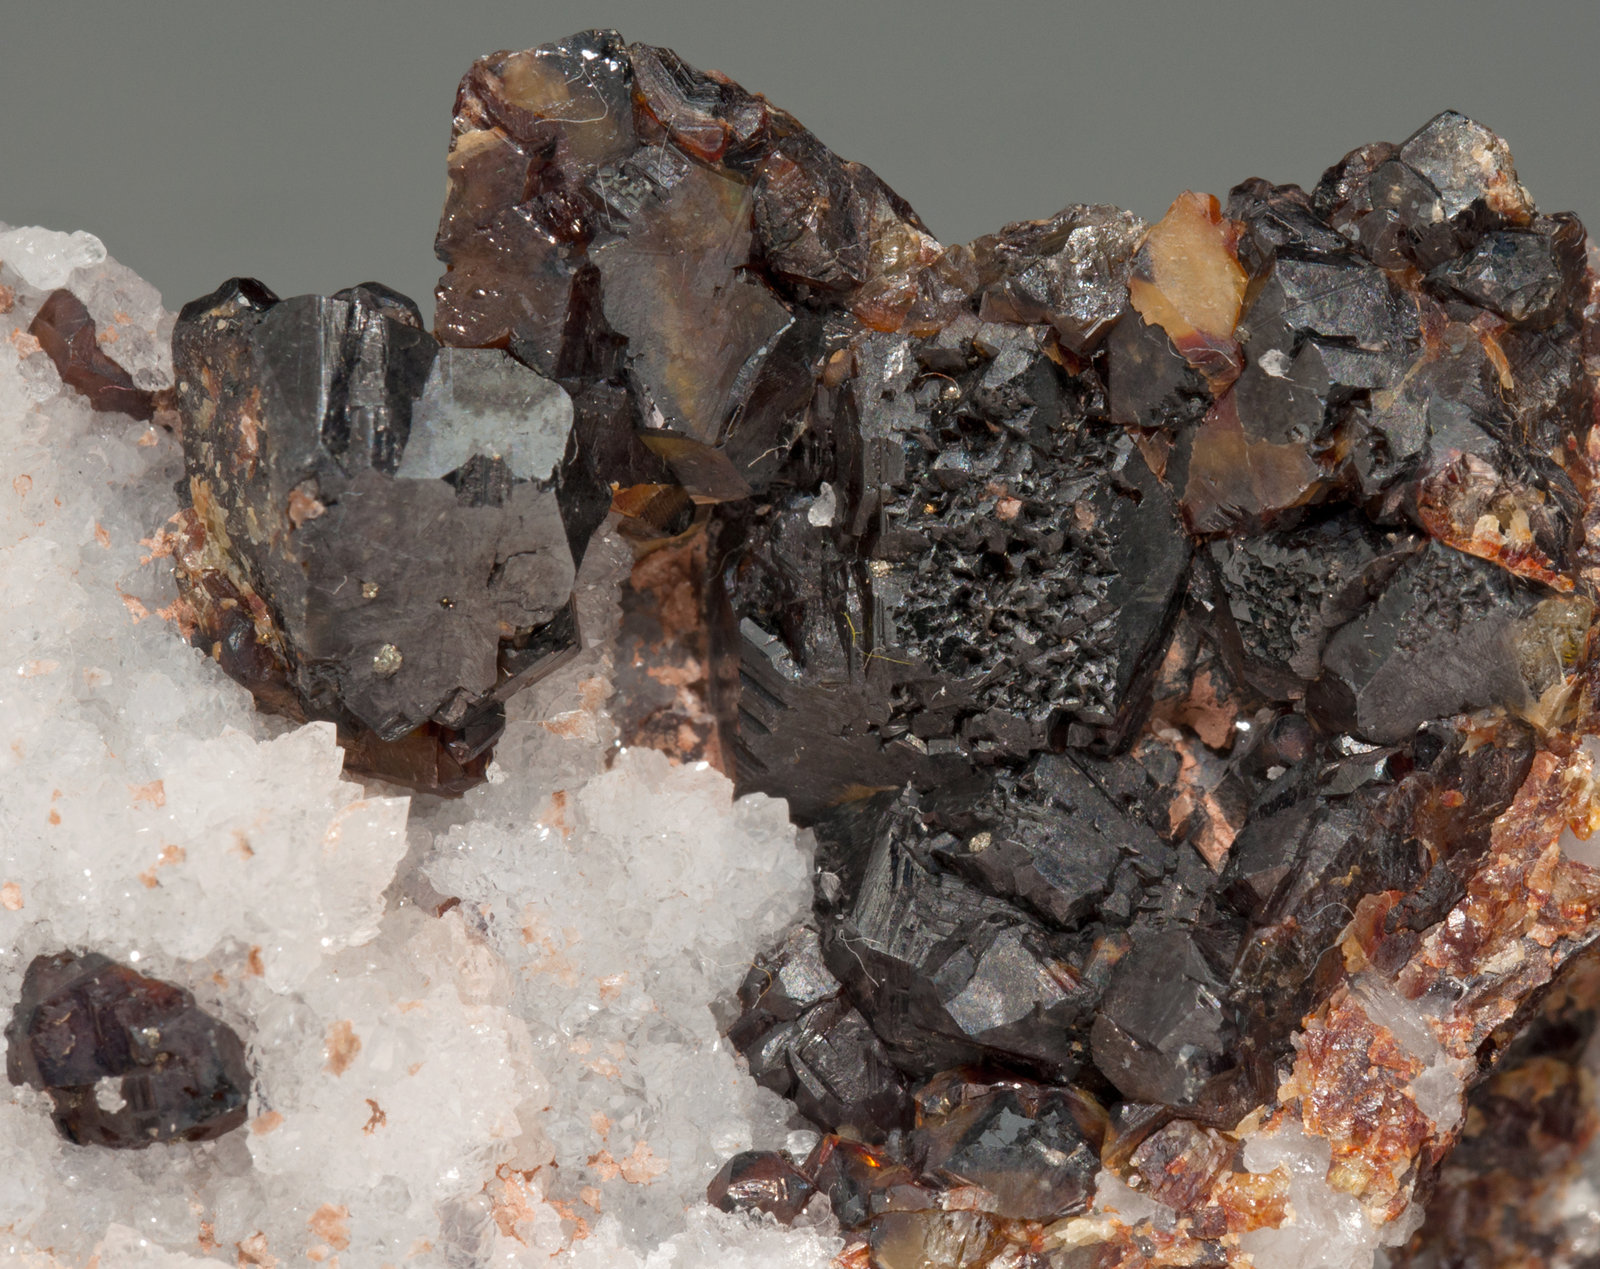 specimens/s_imagesX7/Sphalerite-NZ61X7d.jpg